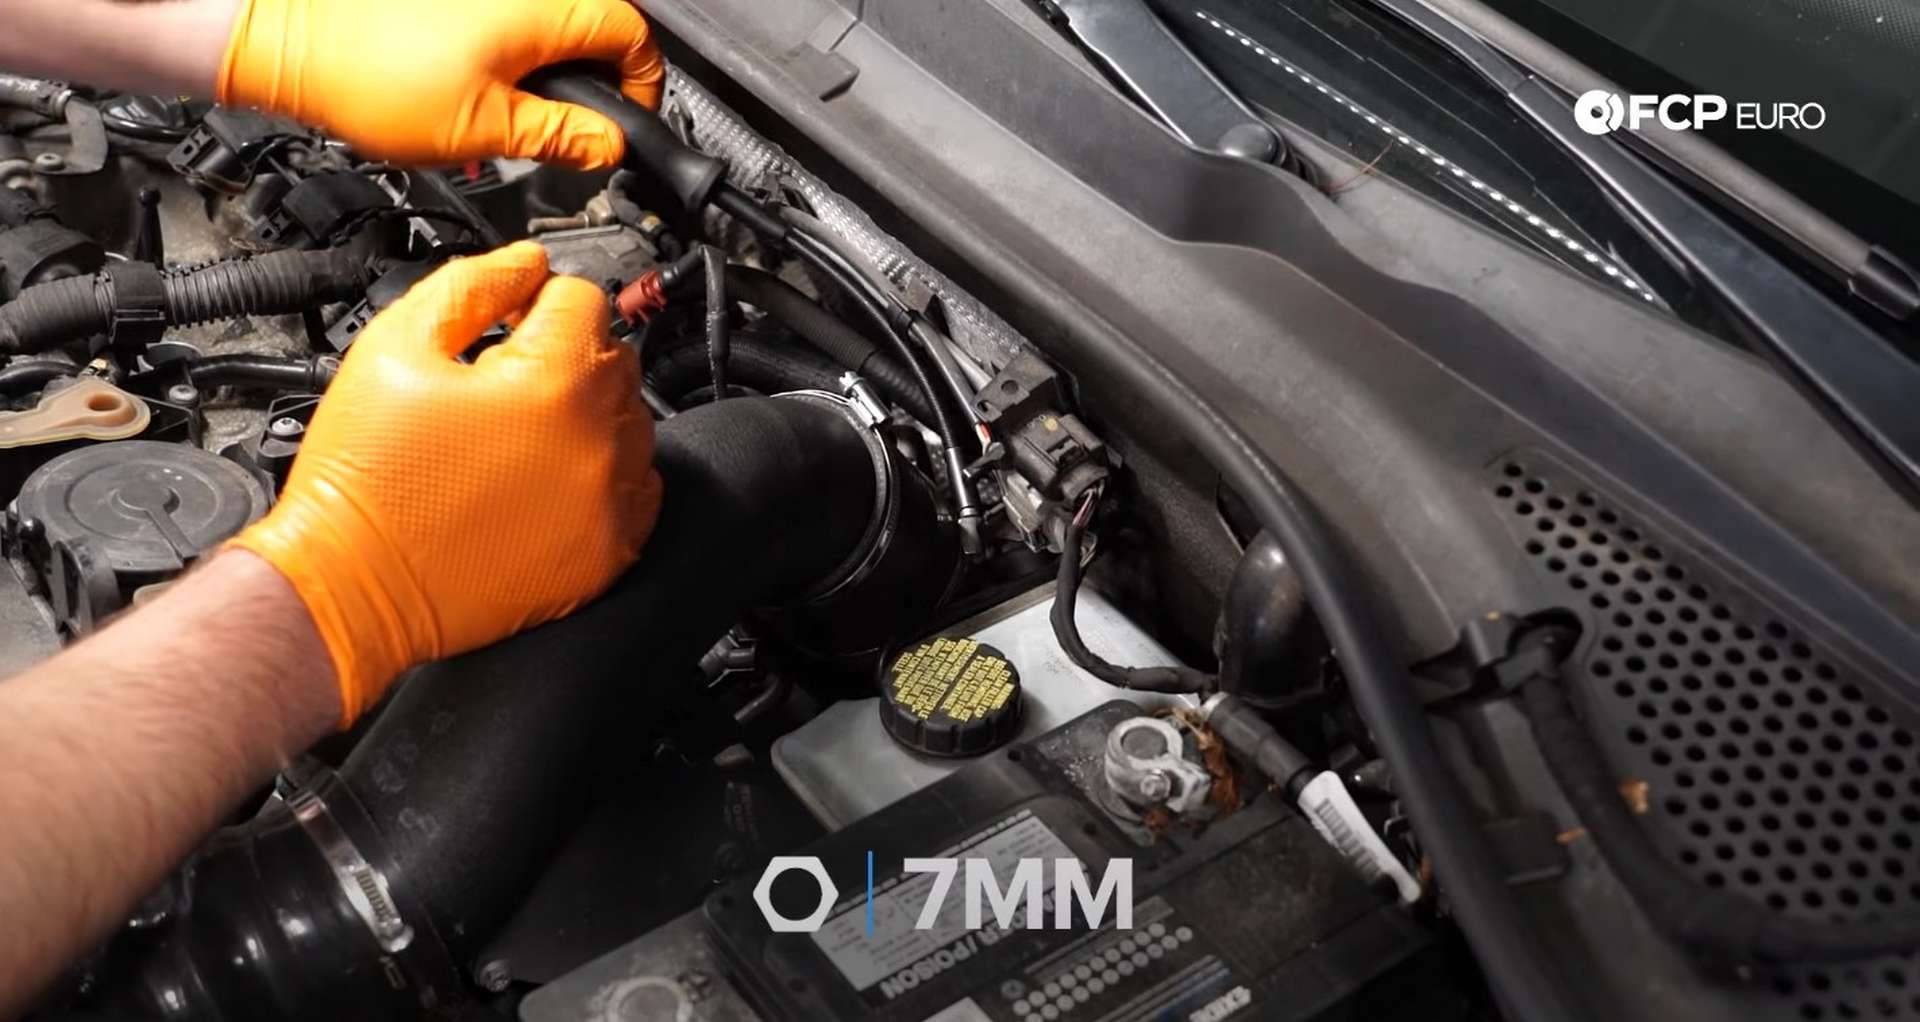 DIY MK7 VW GTI Turbocharger Upgrade loosening the intake clamp